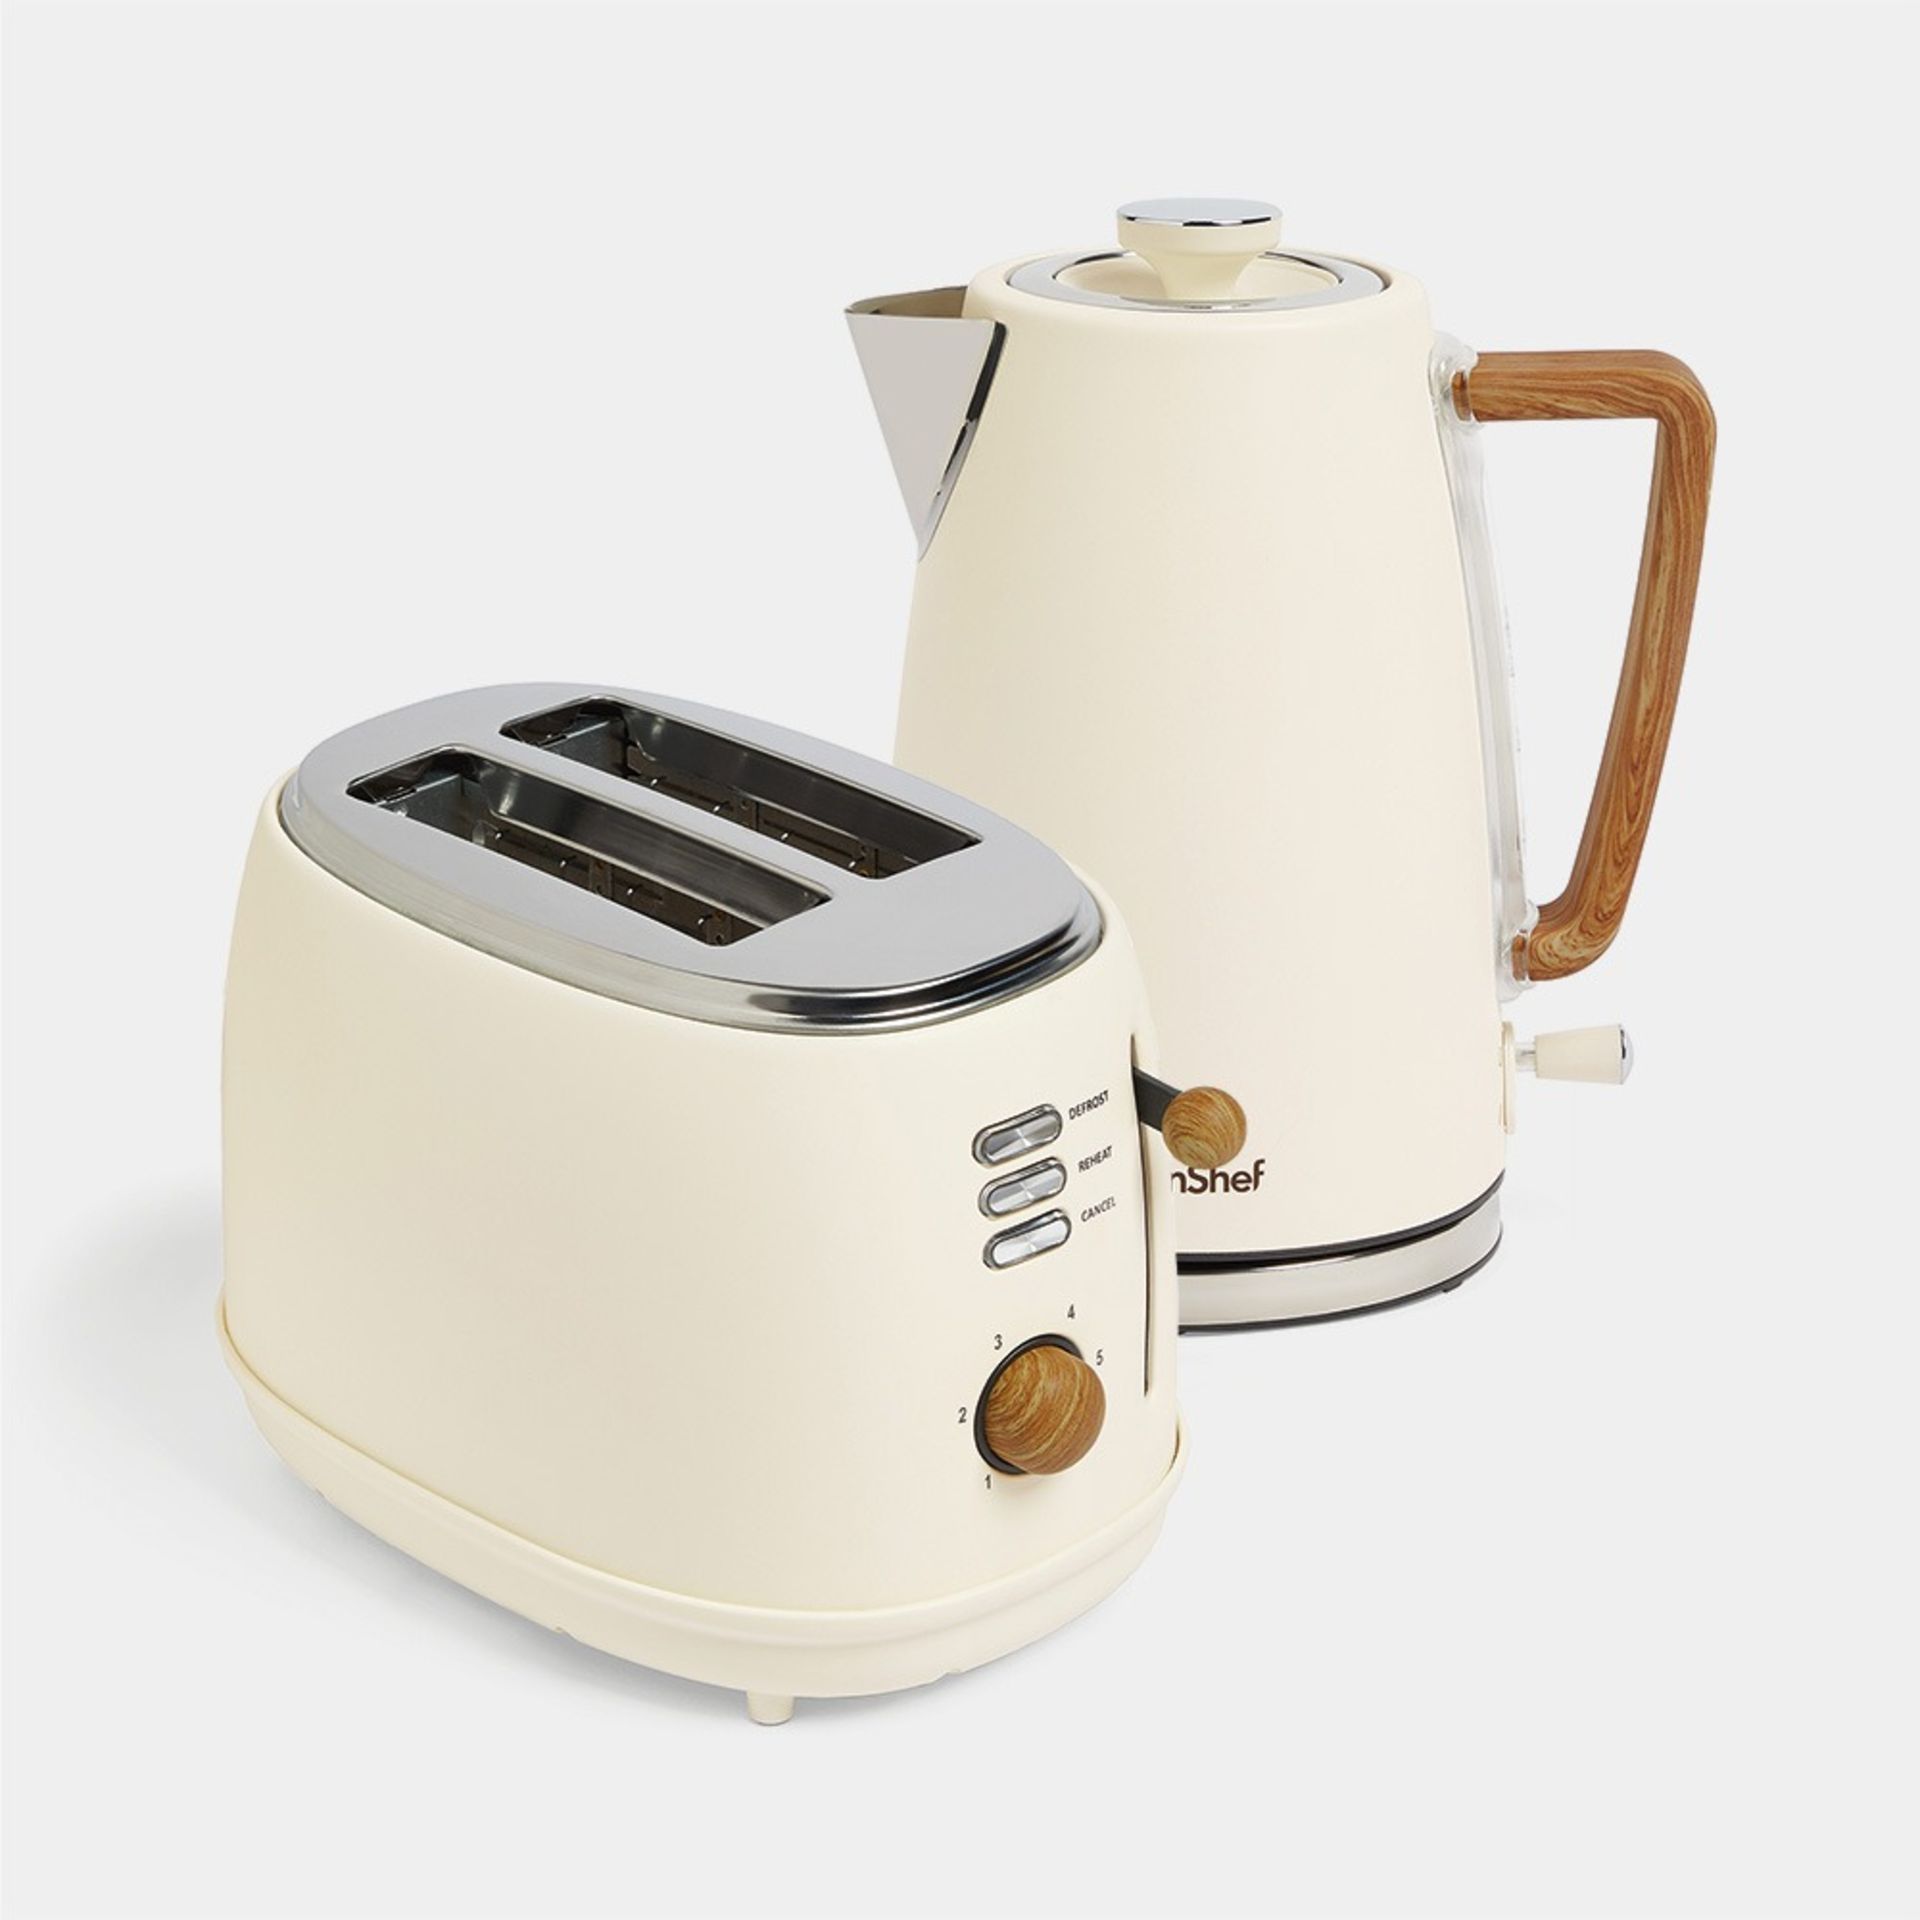 Cream & Wood Kettle & Toaster Set - VonHaus - ER33